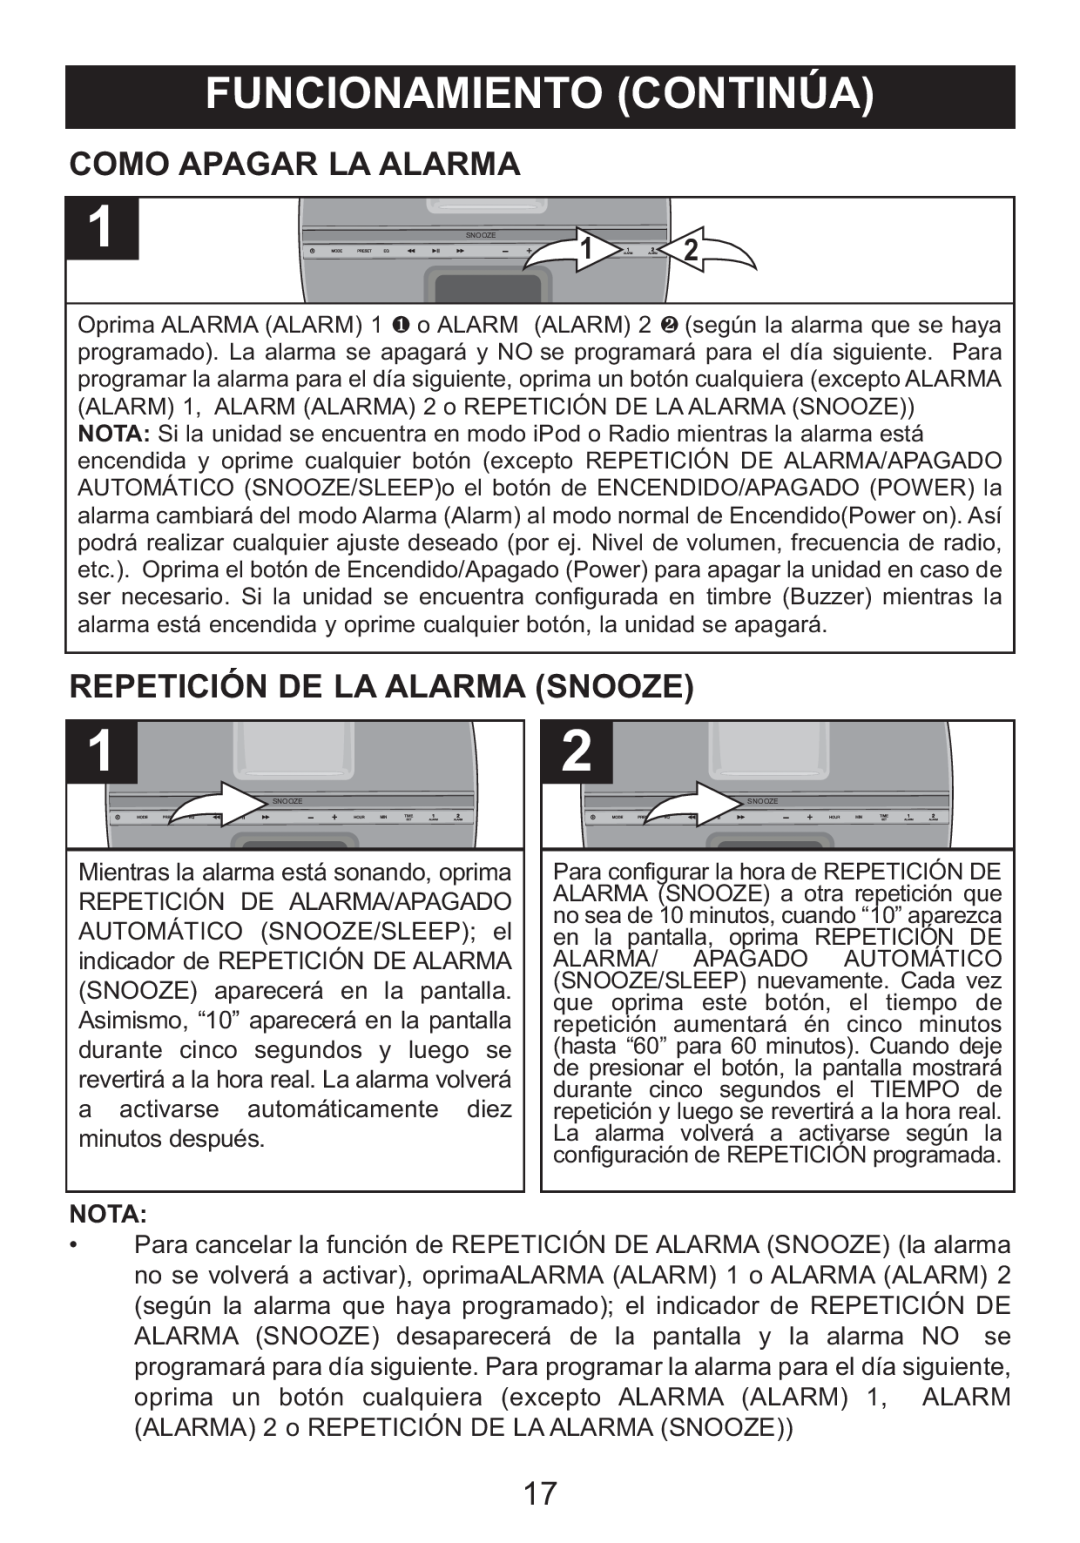 Memorex Mi4014 manual Como Apagar La Alarma, Repetición De La Alarma Snooze, Nota 